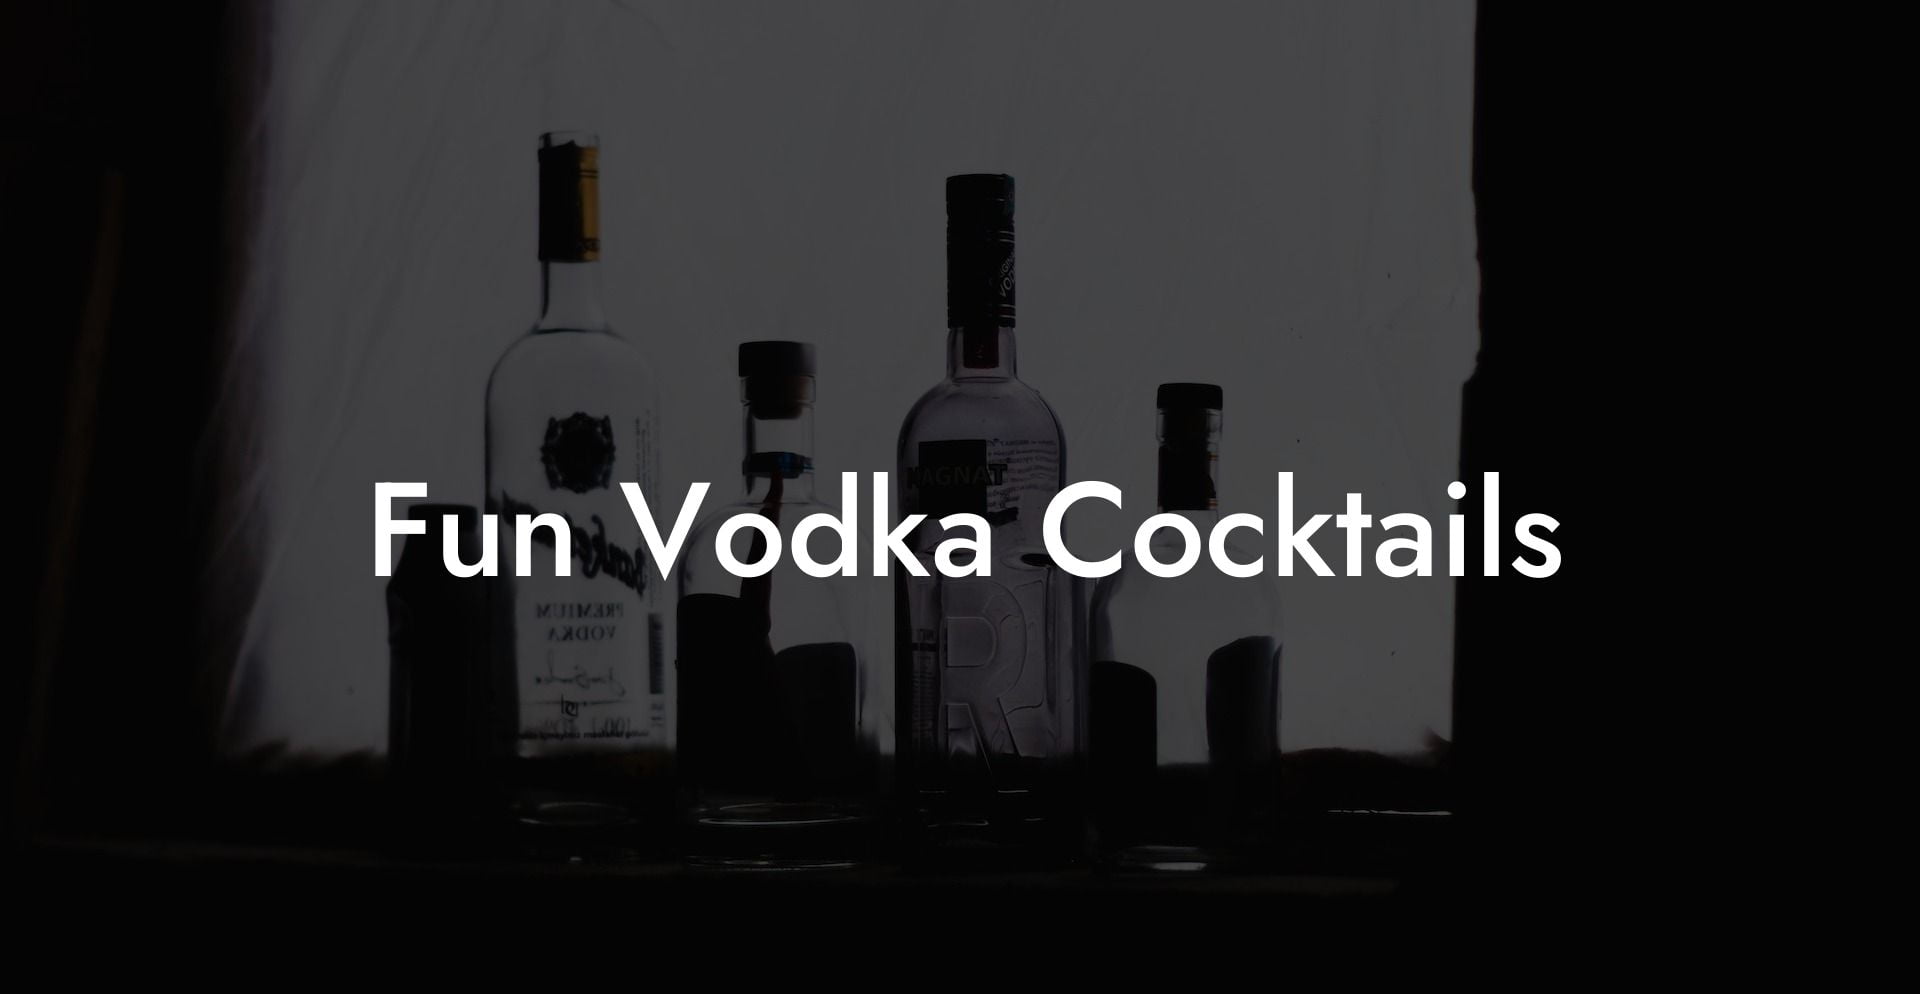 Fun Vodka Cocktails